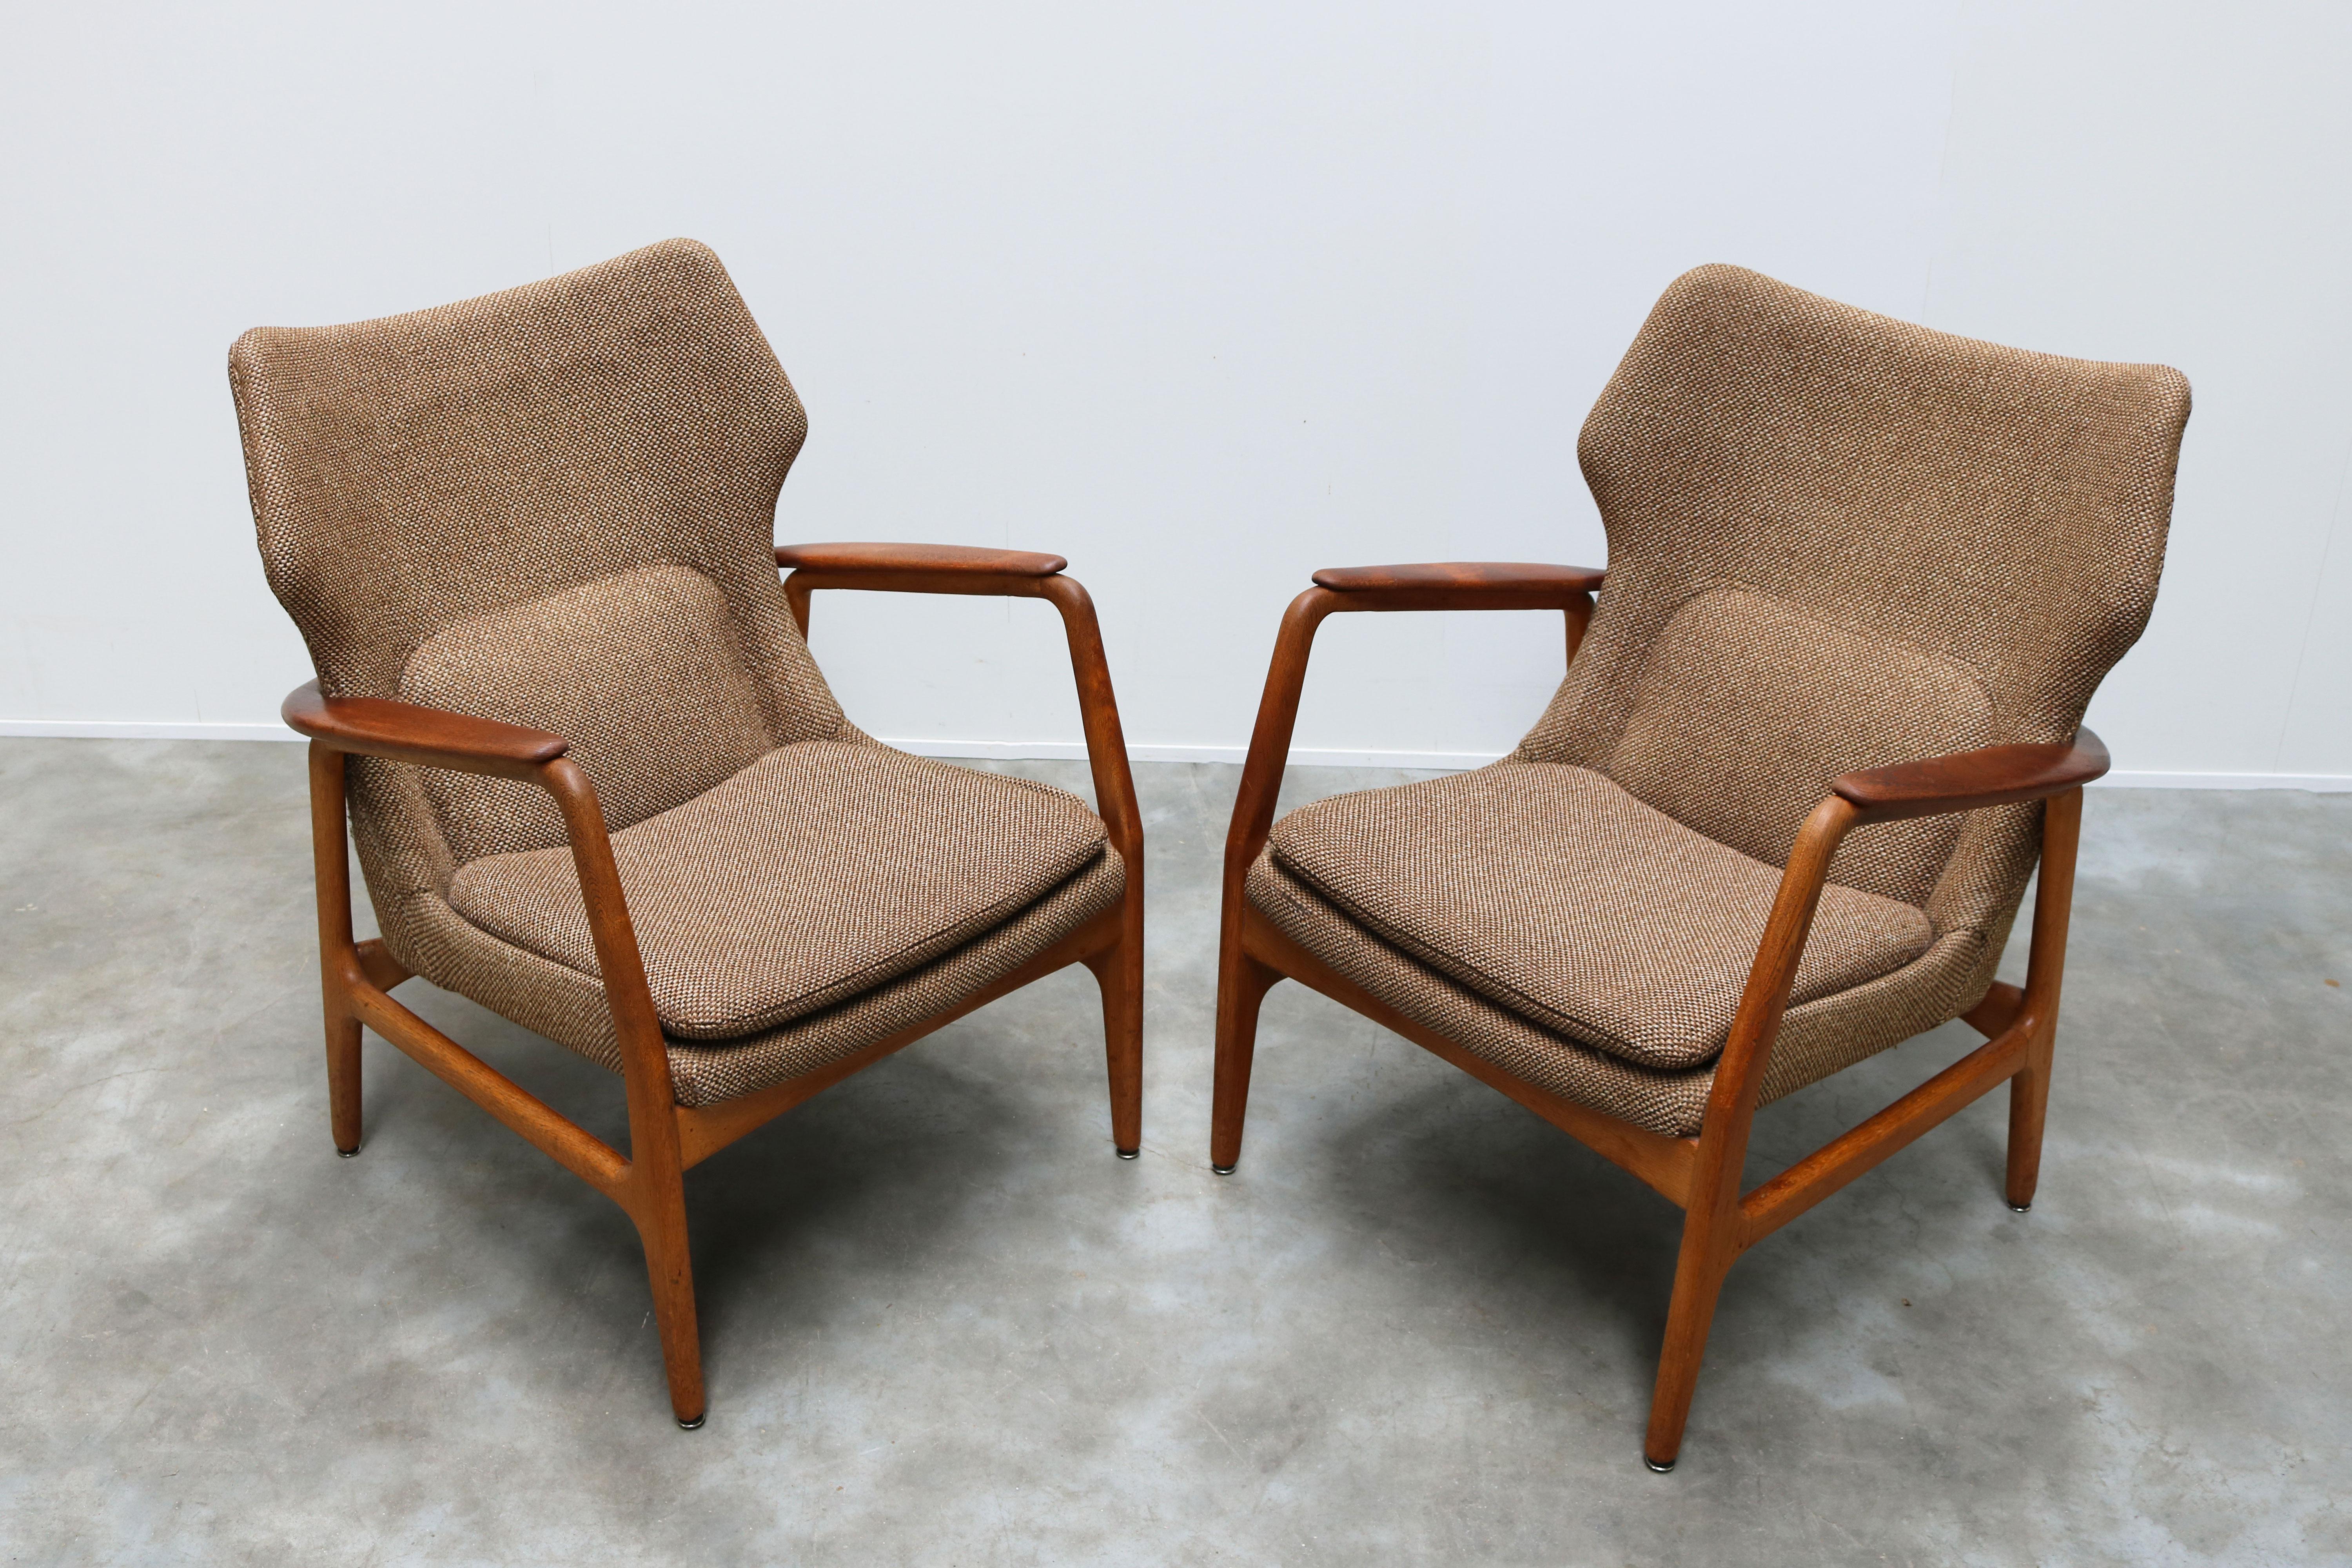 Pair of Danish Lounge Chairs by Aksel Bender Madsen 1952 Bovenkamp Teak Brown 1